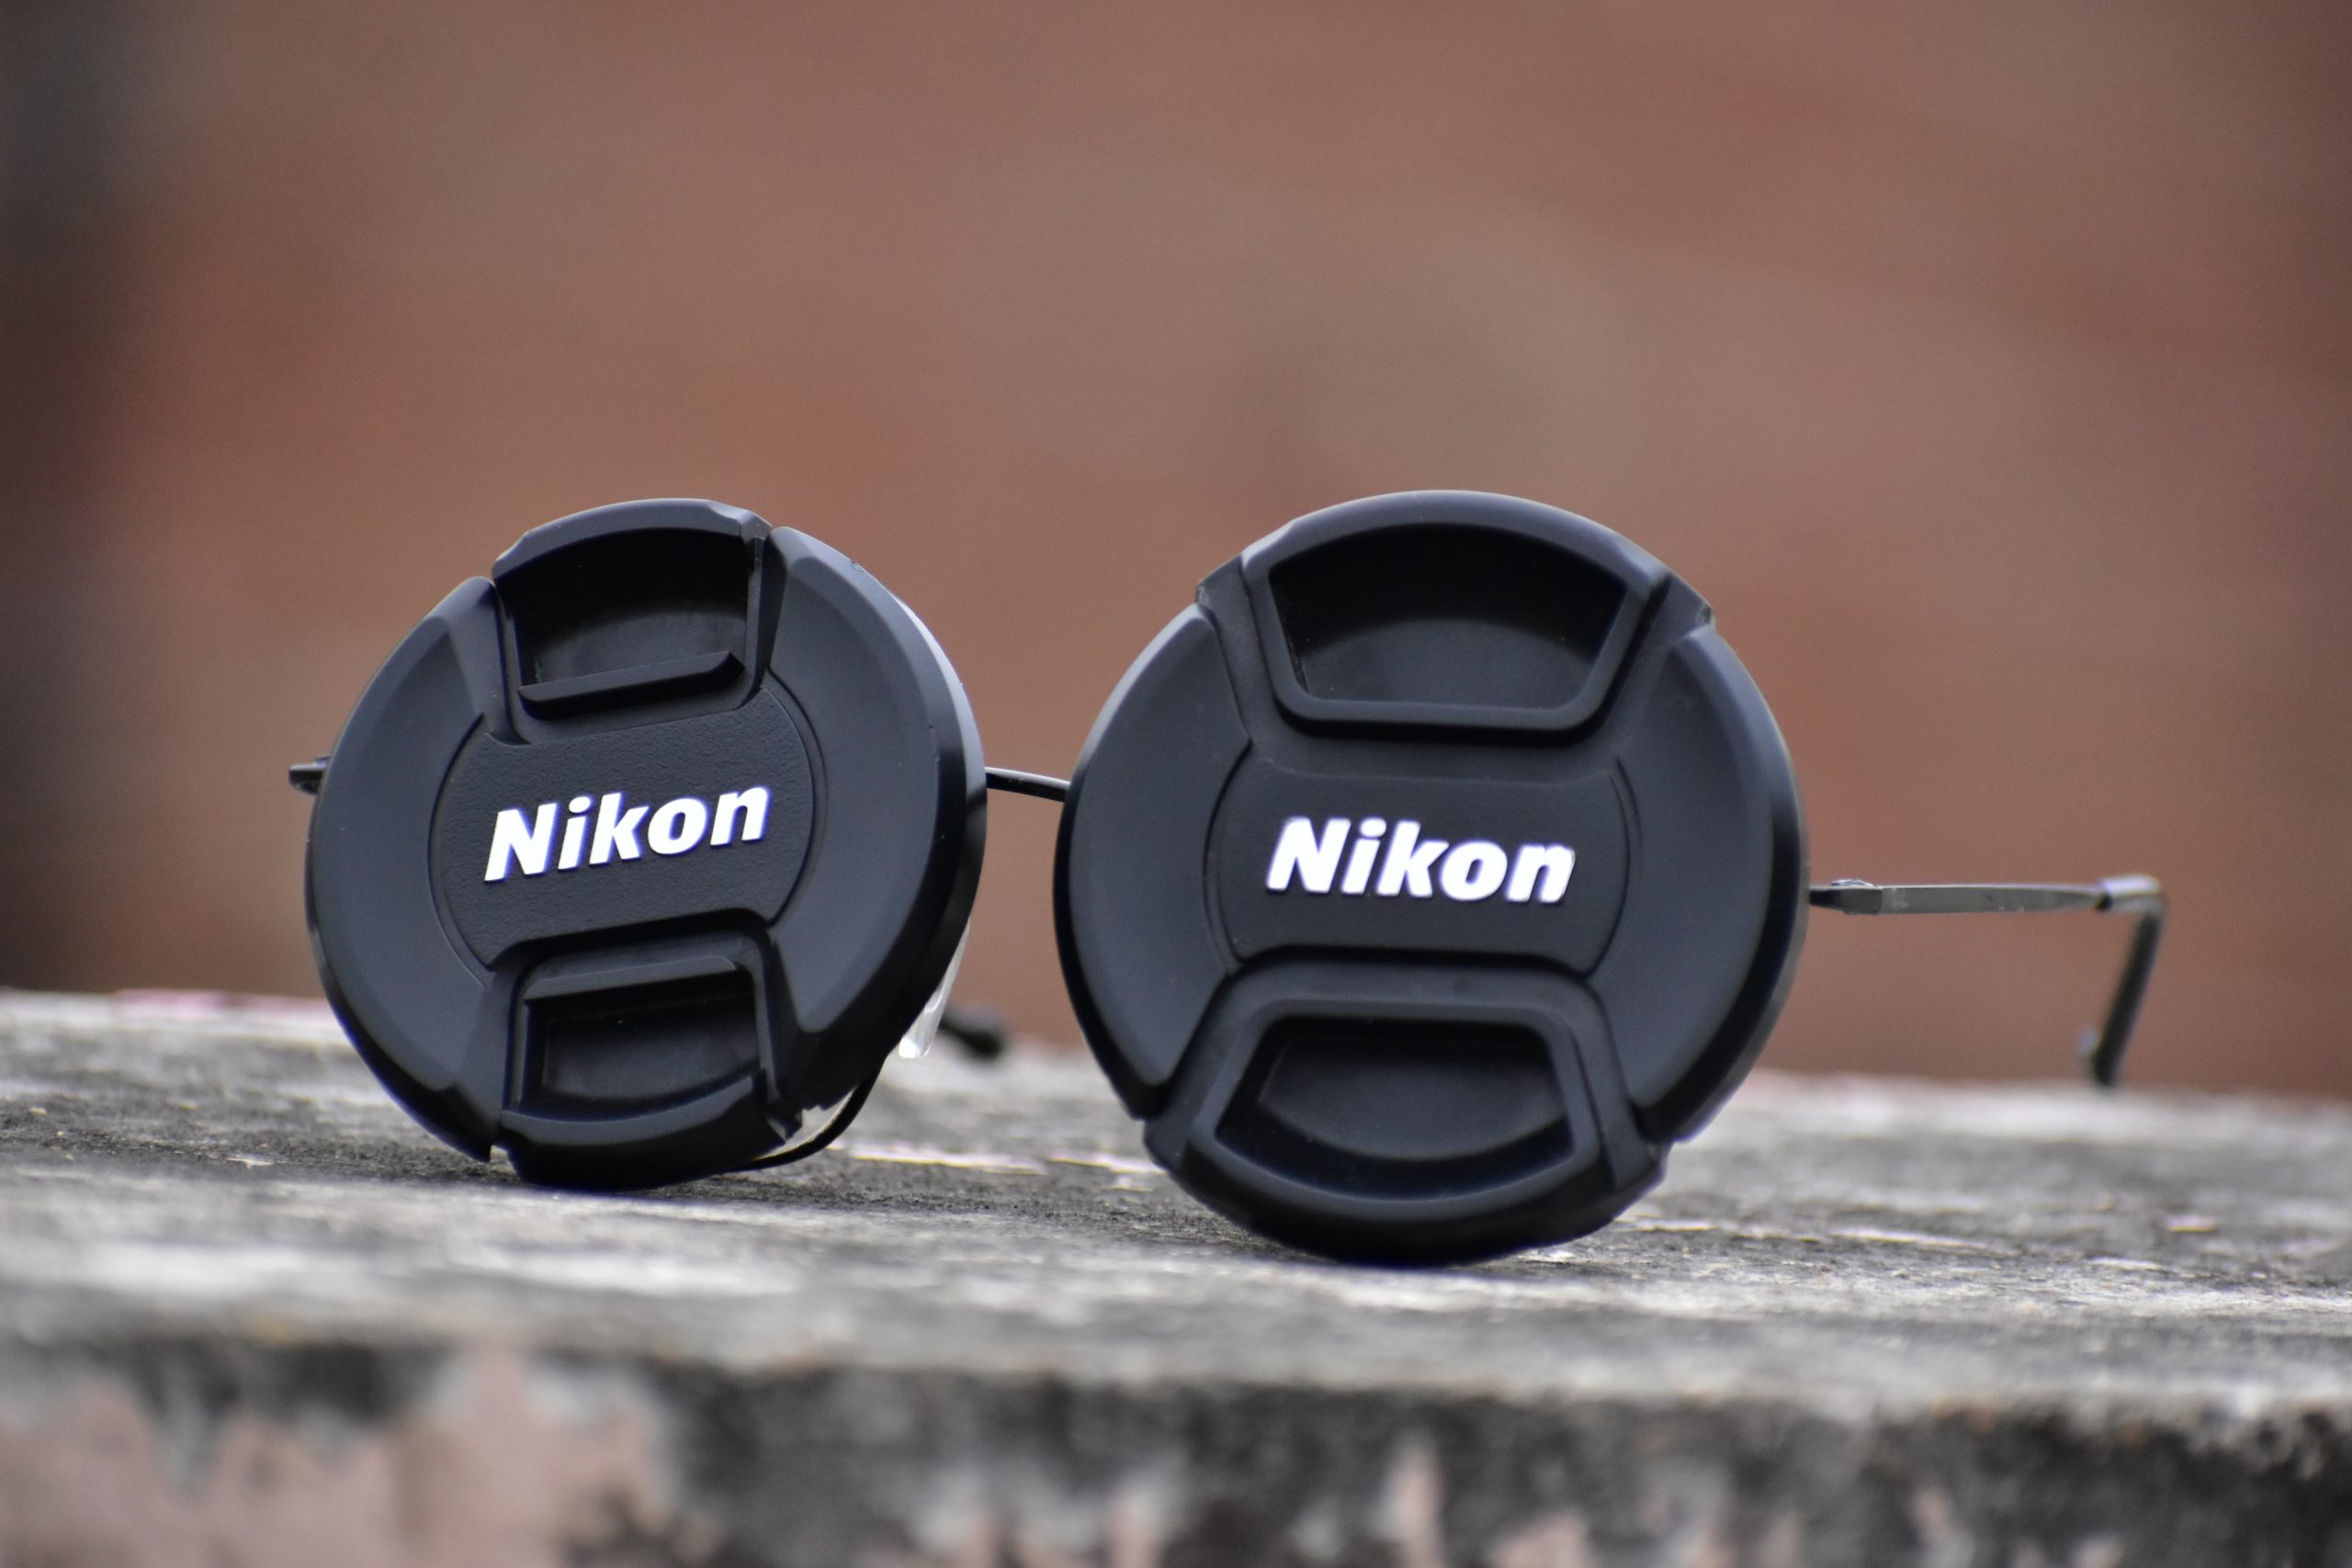 Nikon camera lens caps